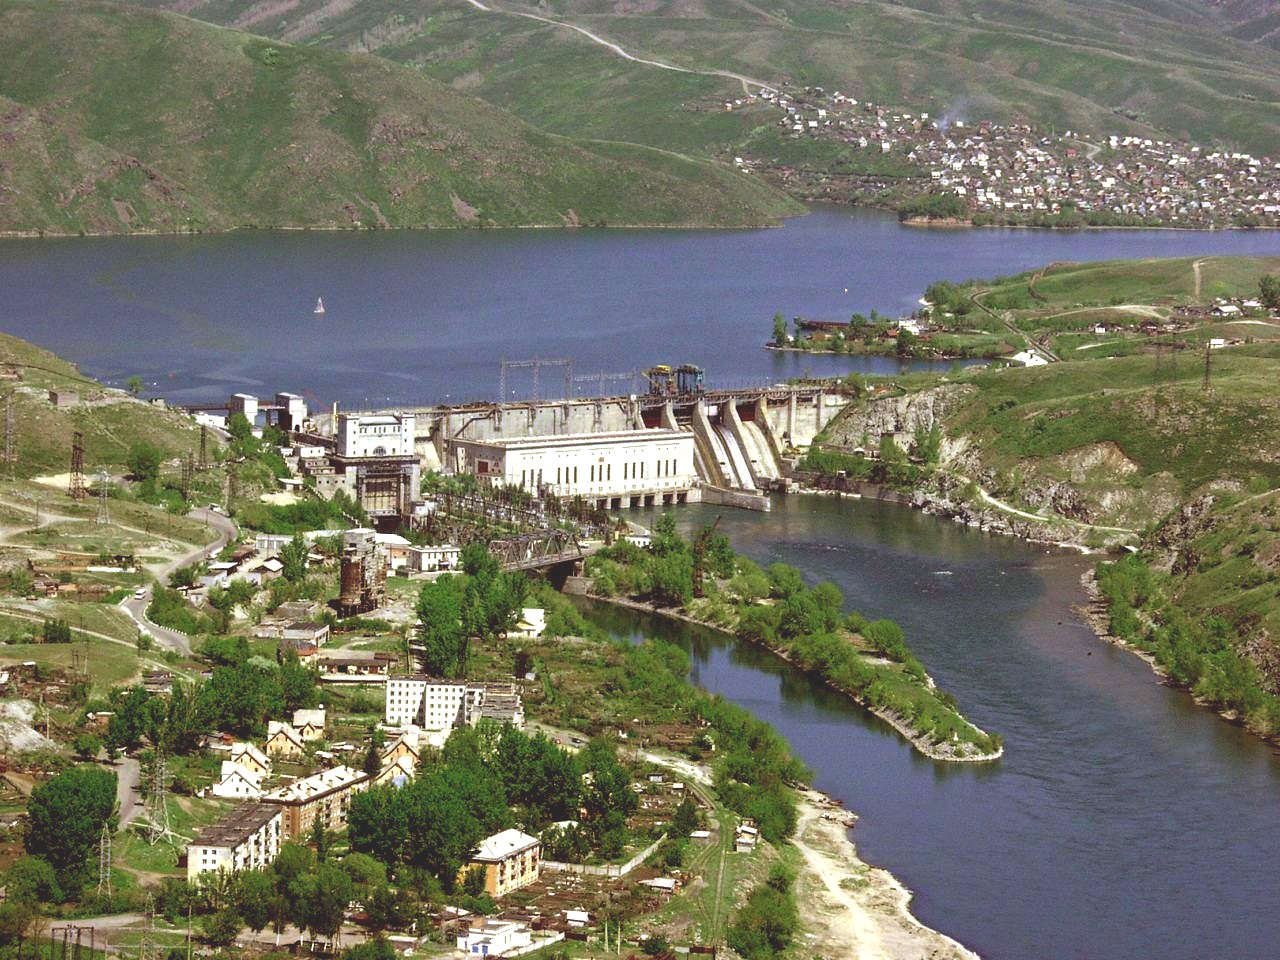 серебрянск восточный казахстан 1960 годы